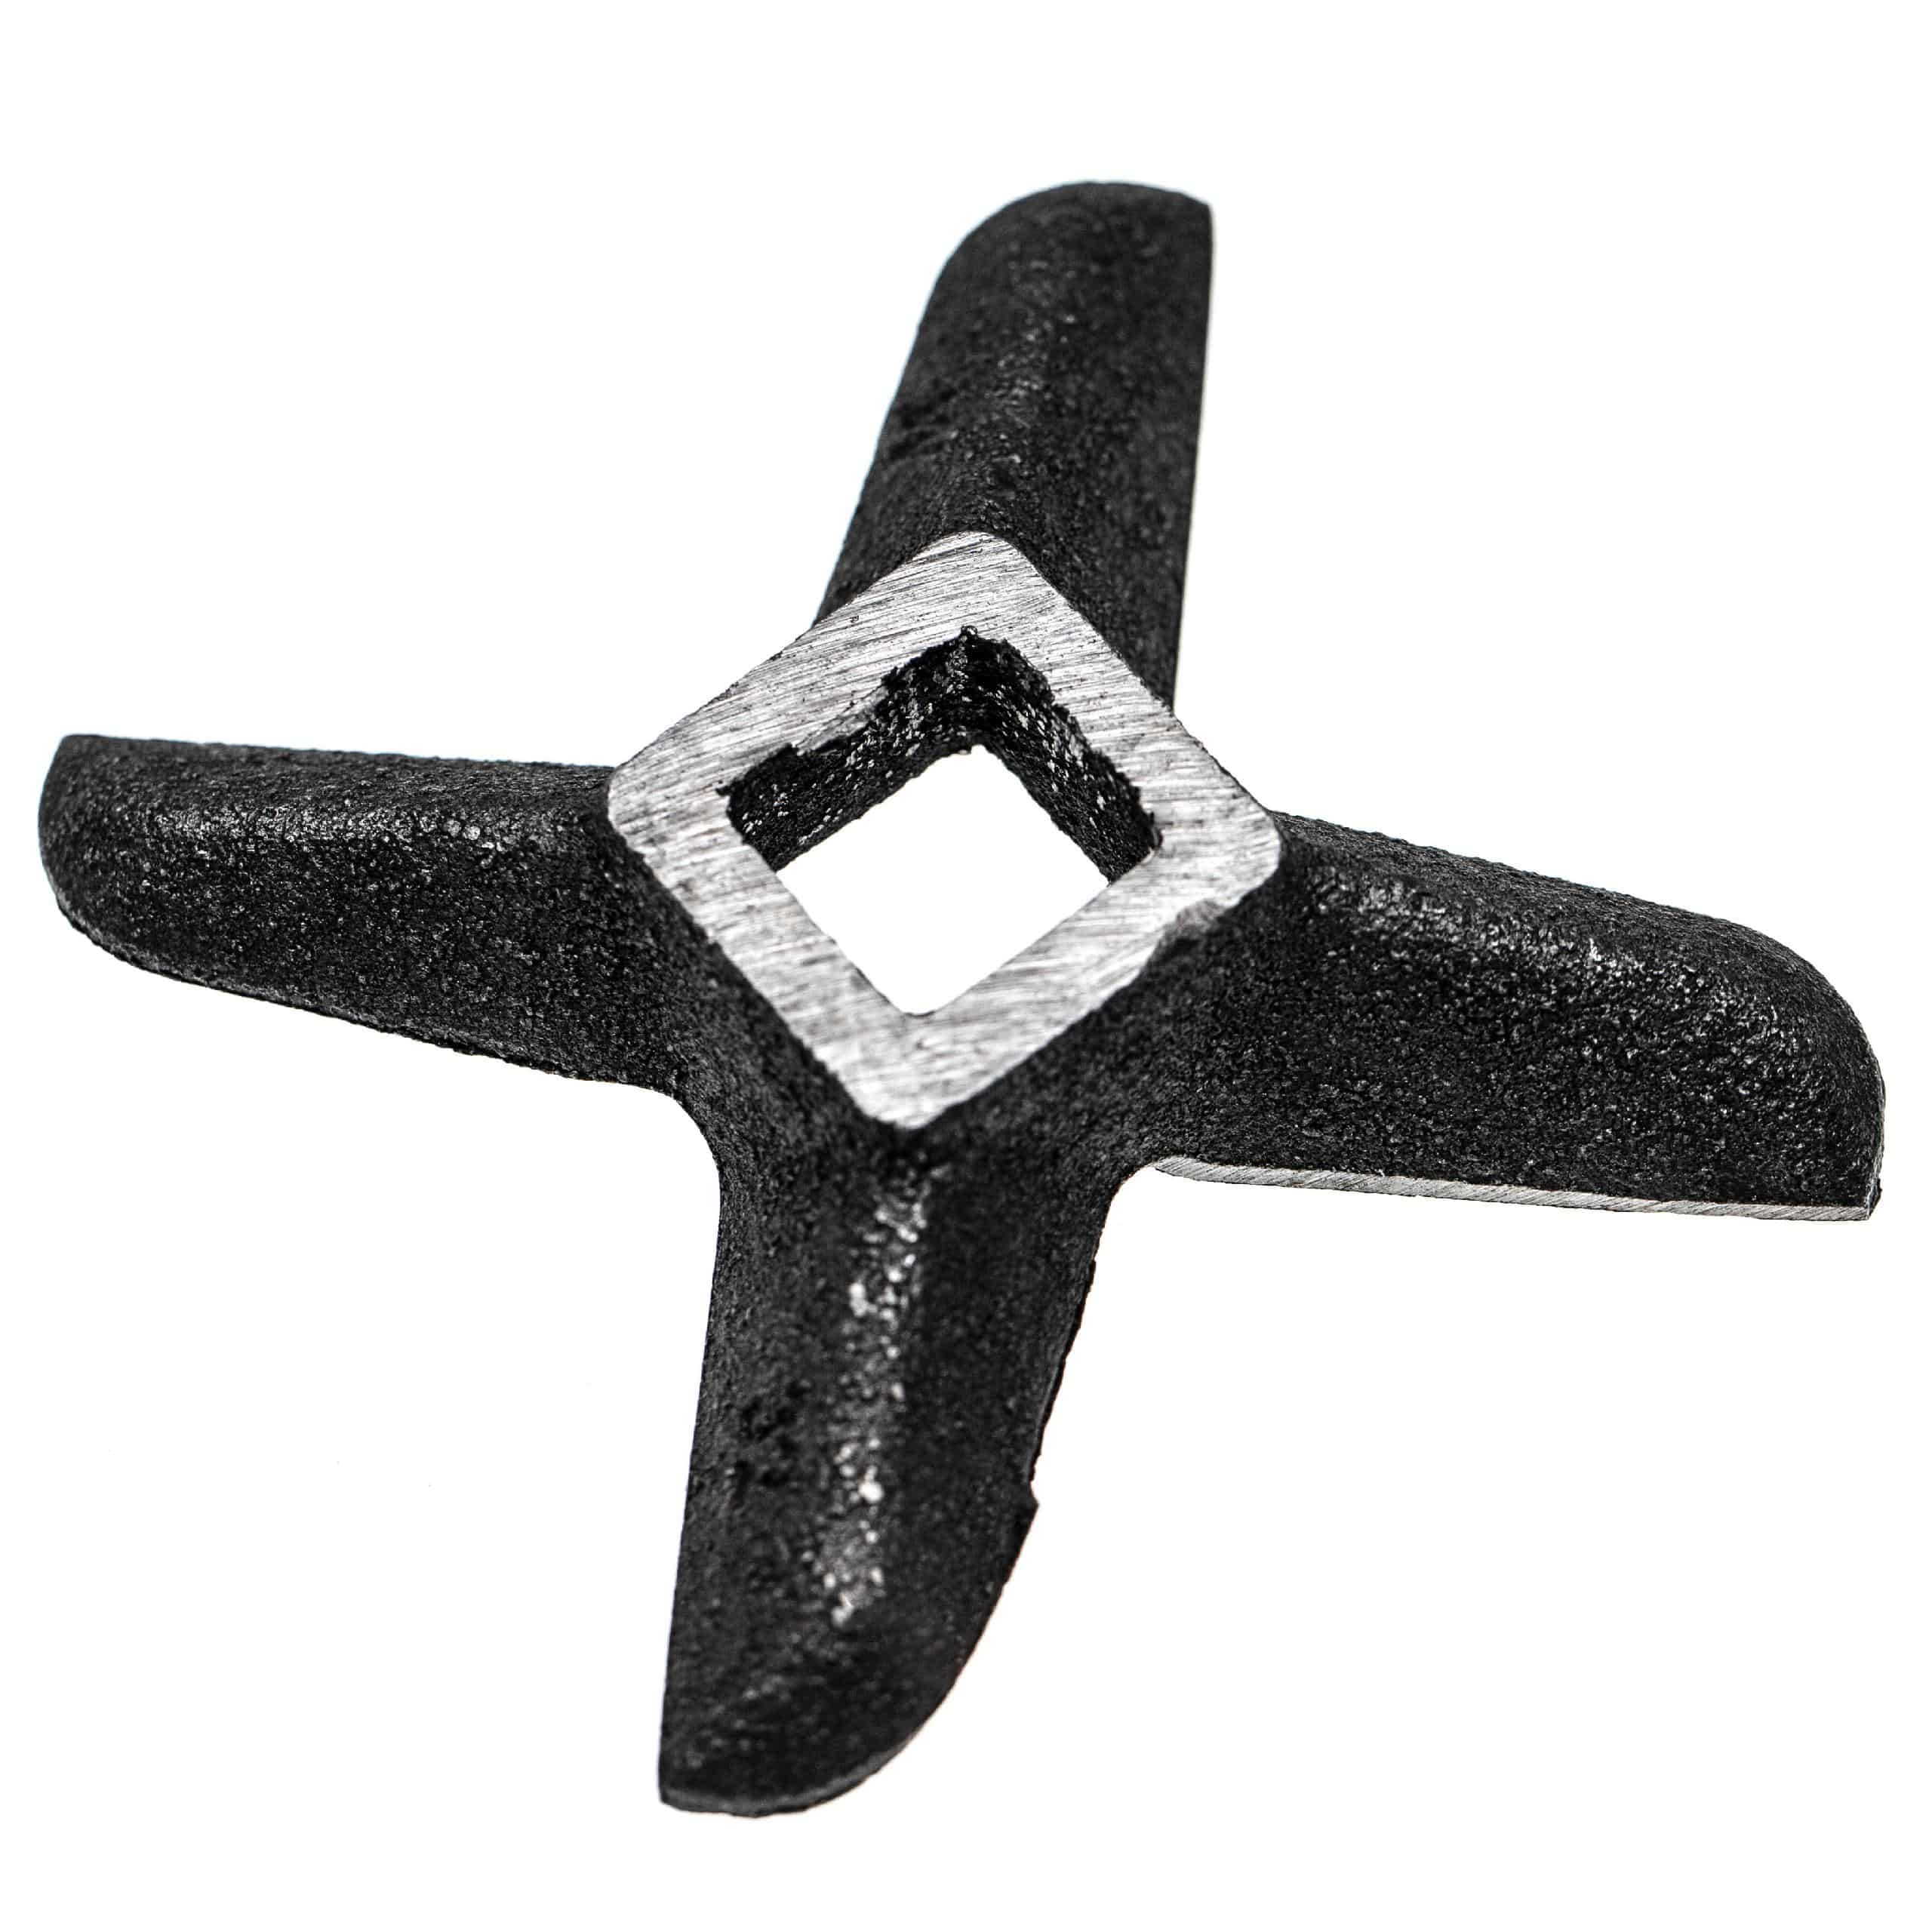 Cuchilla en cruz nº. 32 para picadoras por ej. compatible con ADE, Caso, Fama - cuadrado 15,1 x 15,1 mm